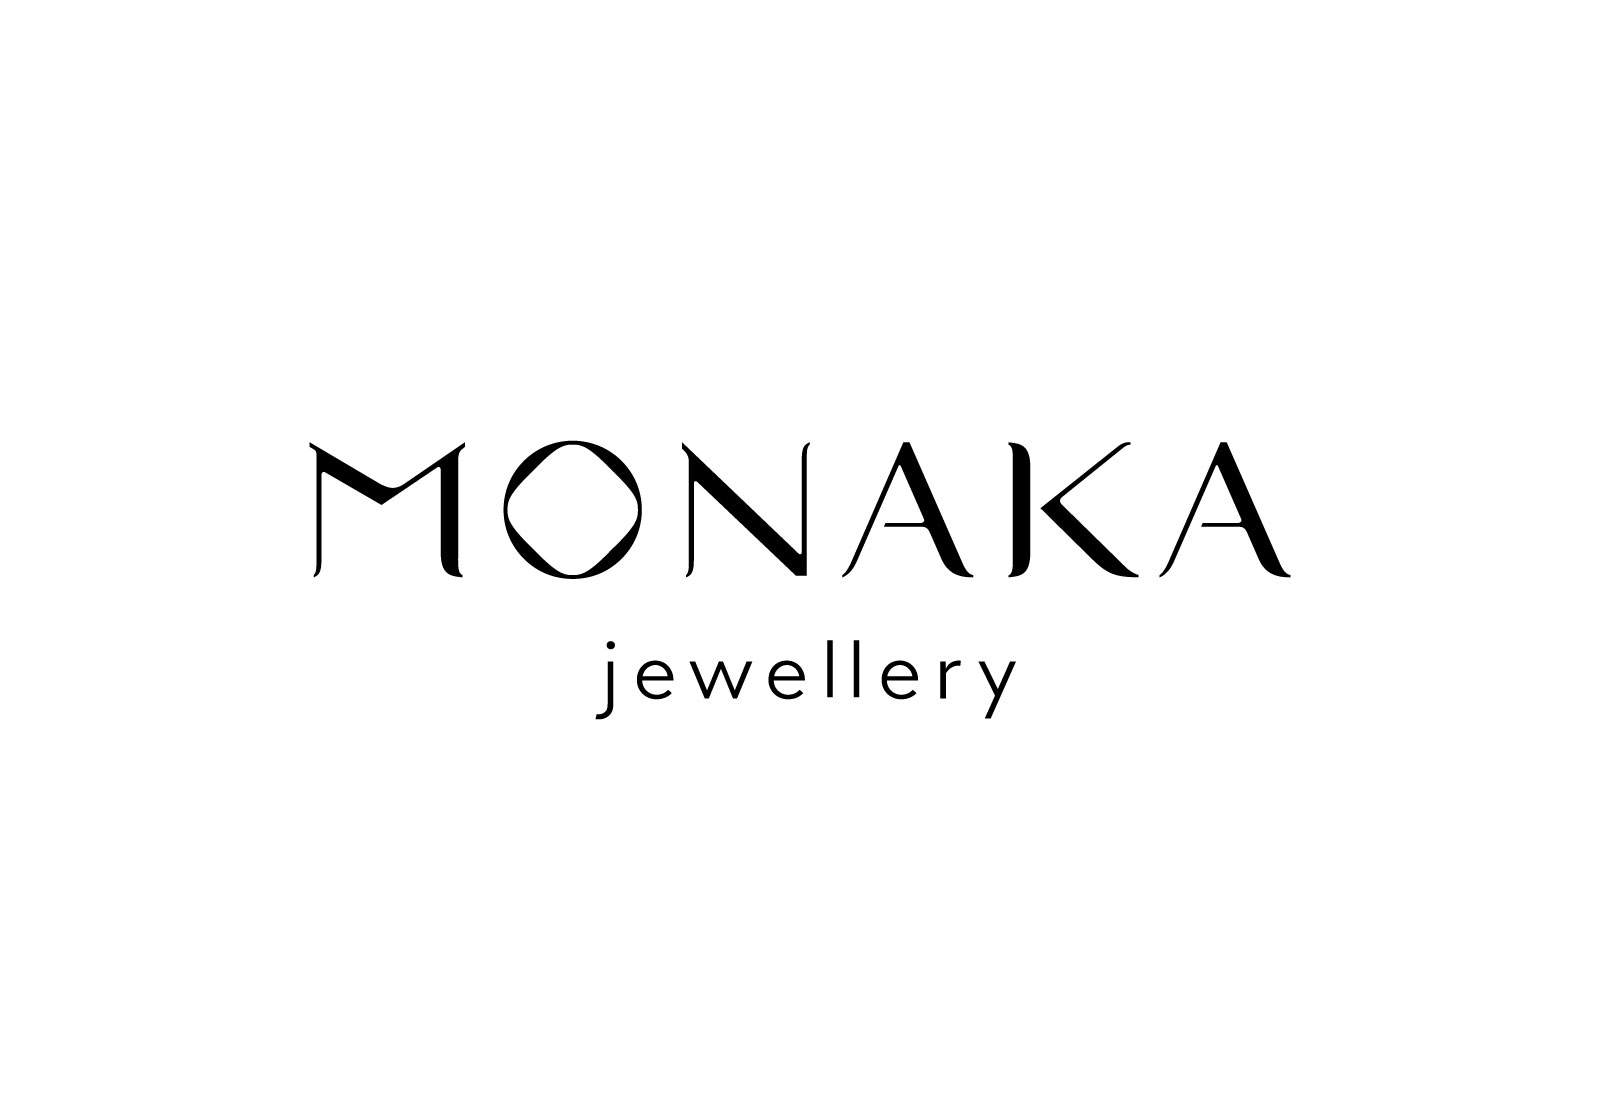 MONAKA jewellery